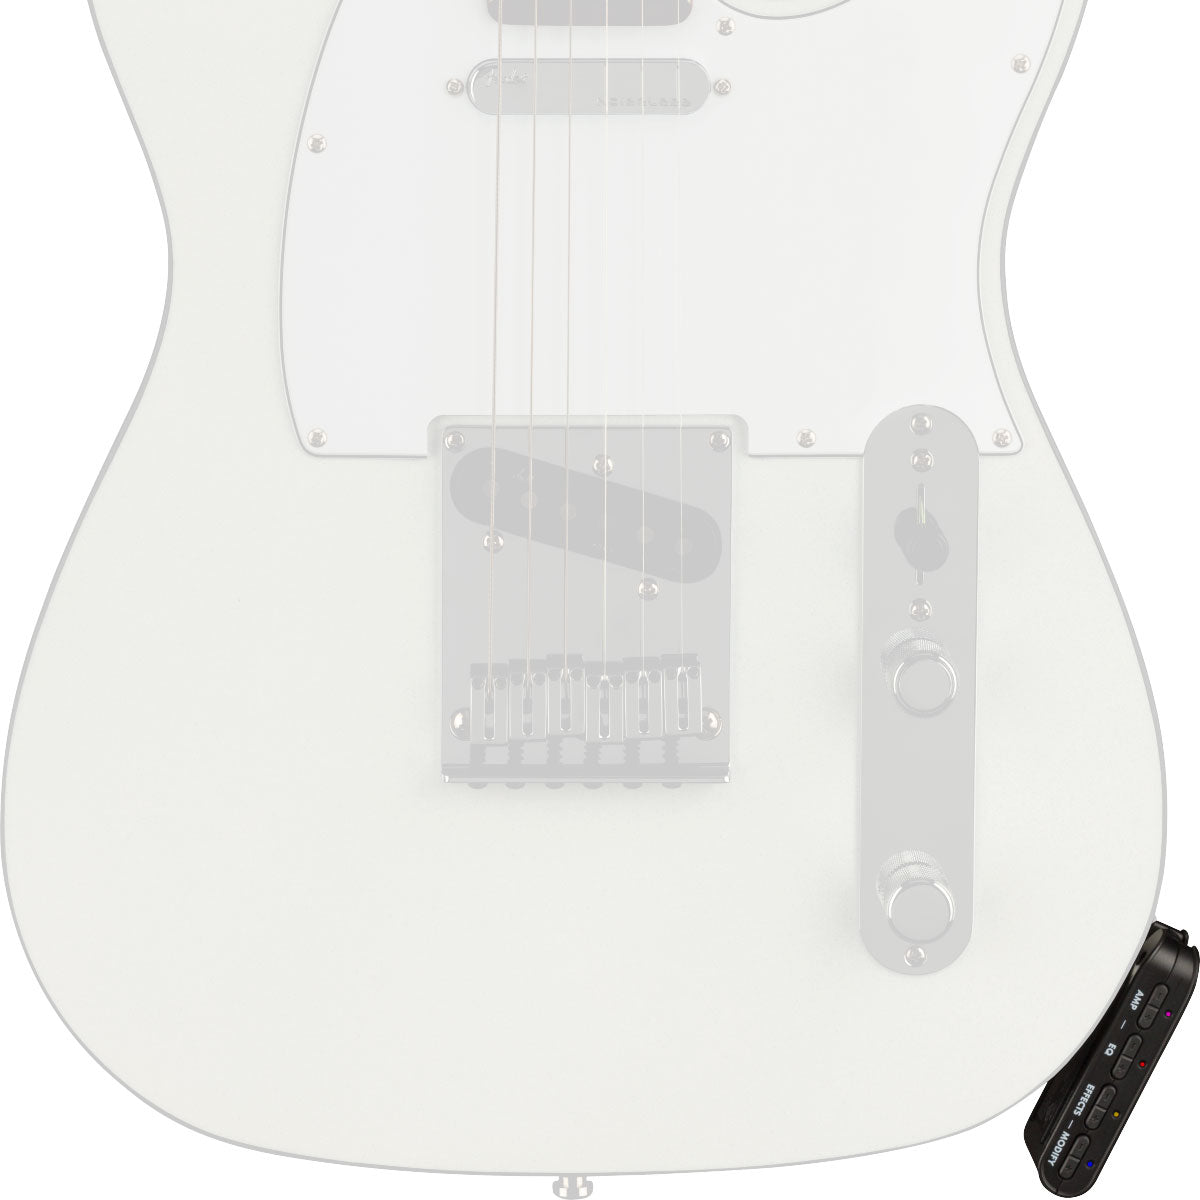 Fender Mustang Micro Guitar Headphone Amp